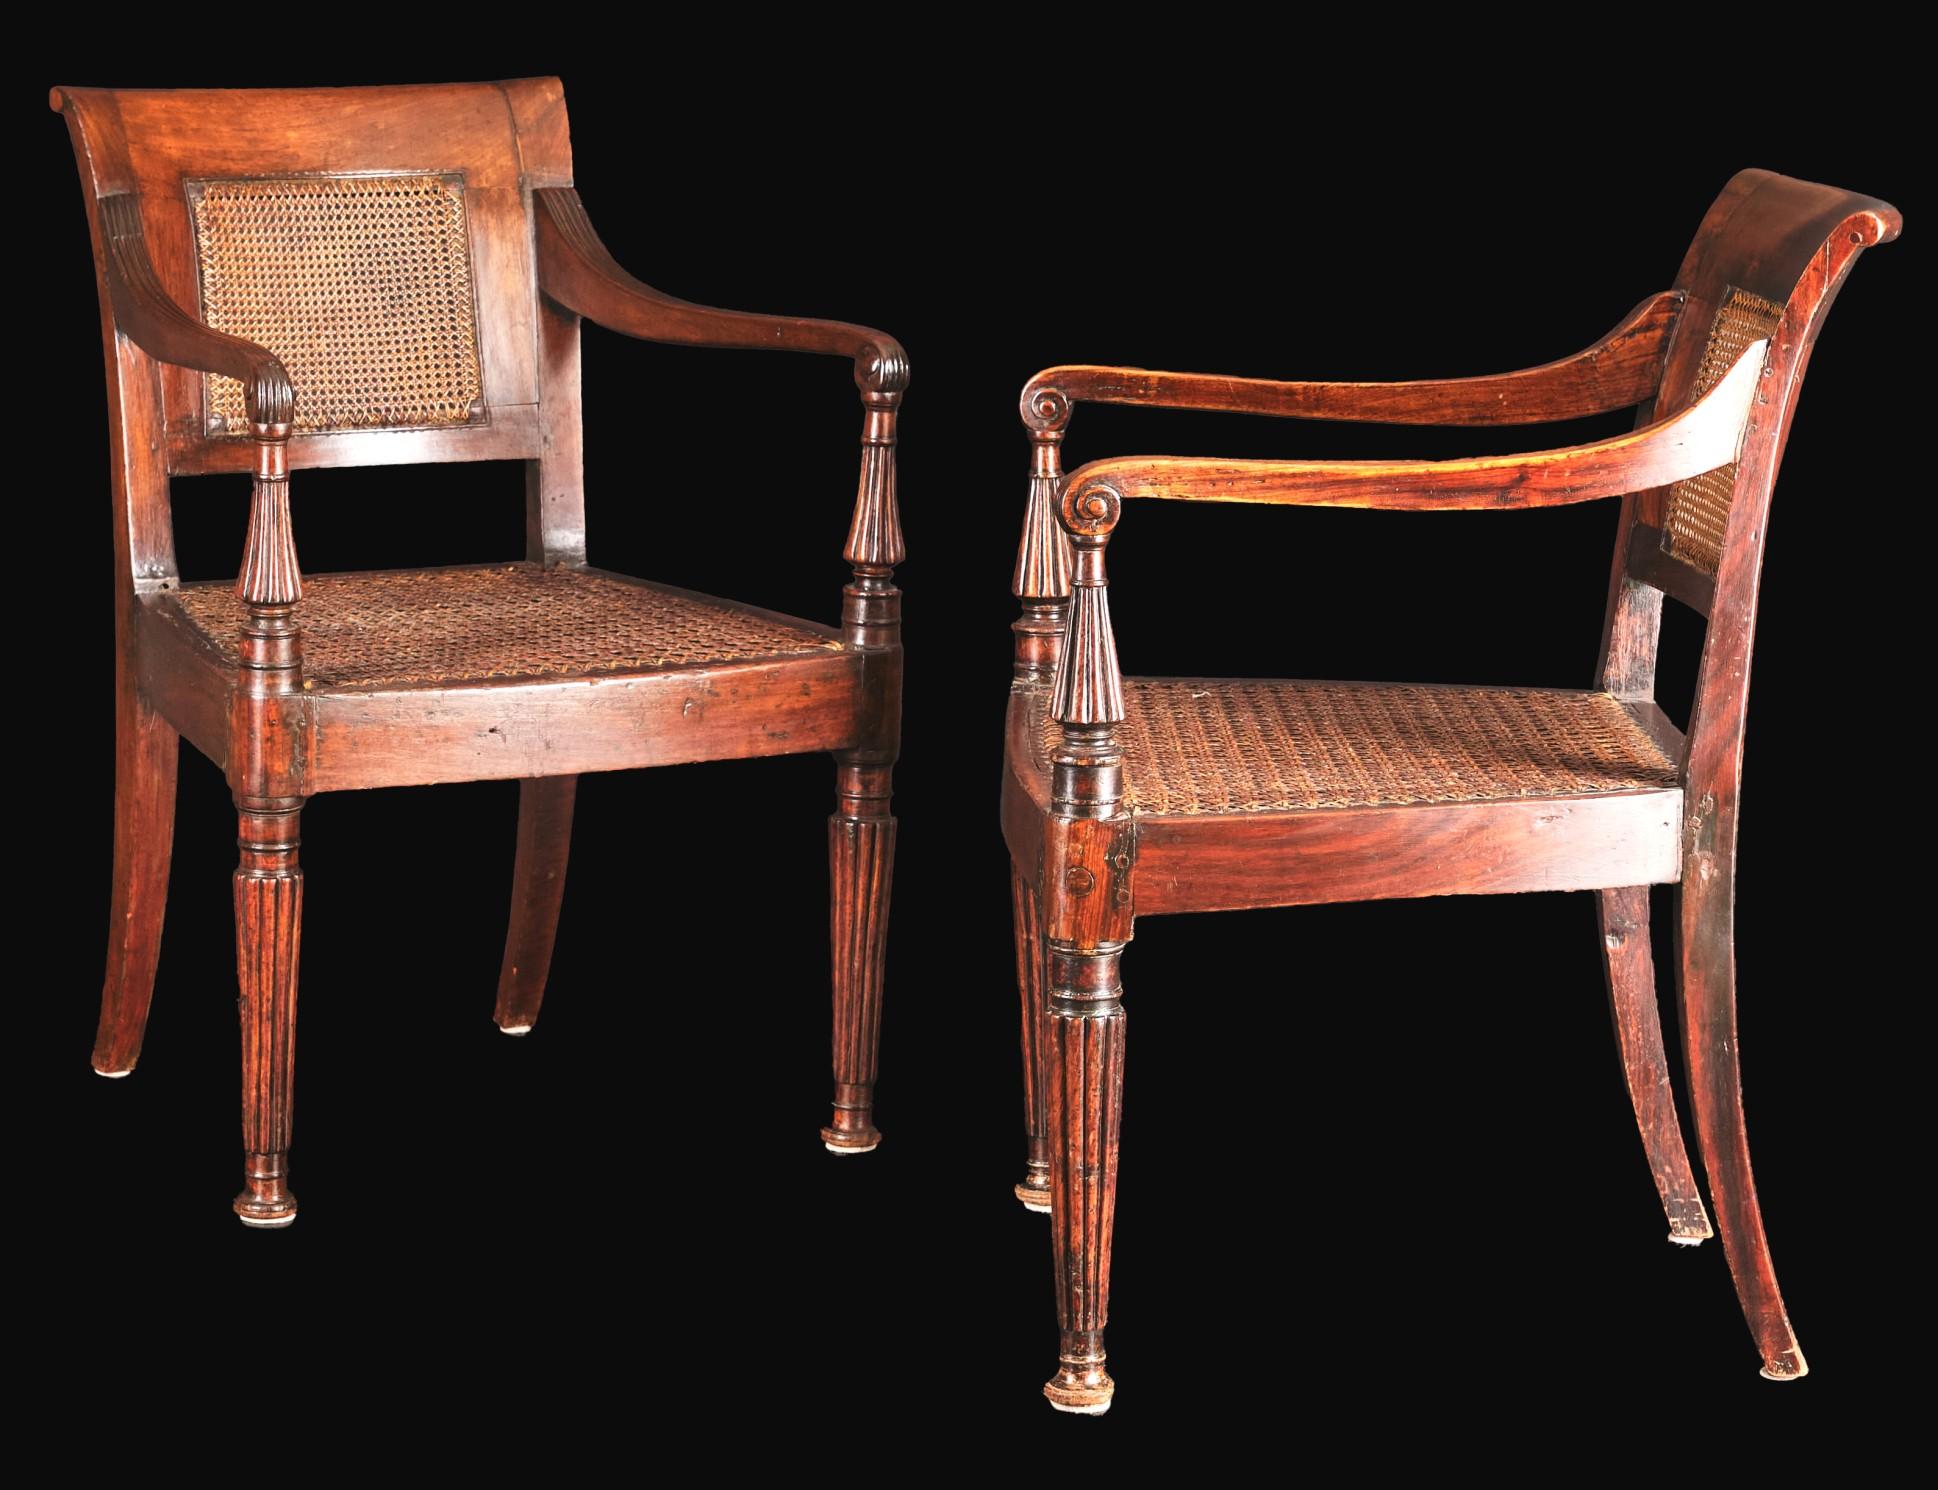 Très belle paire de fauteuils anglo-indiens du XIXe siècle, avec des cadres en bois de padouk richement figuré, avec des dossiers et des sièges cannelés, flanqués d'un accoudoir en forme de balayette sur des supports évasés et cannelés, le tout